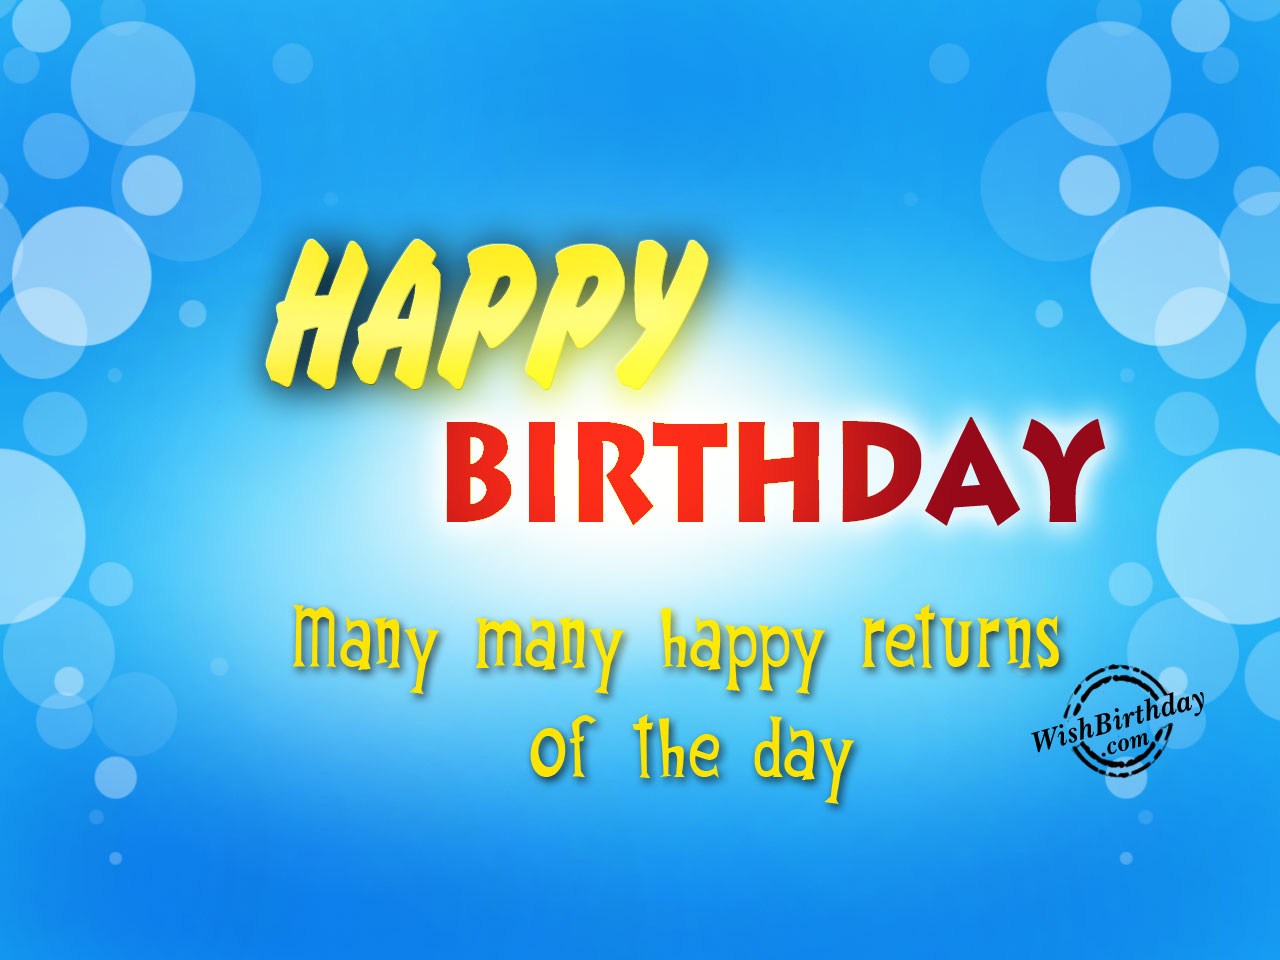 Many Many happy returns of the day - Birthday Wishes, Happy ...